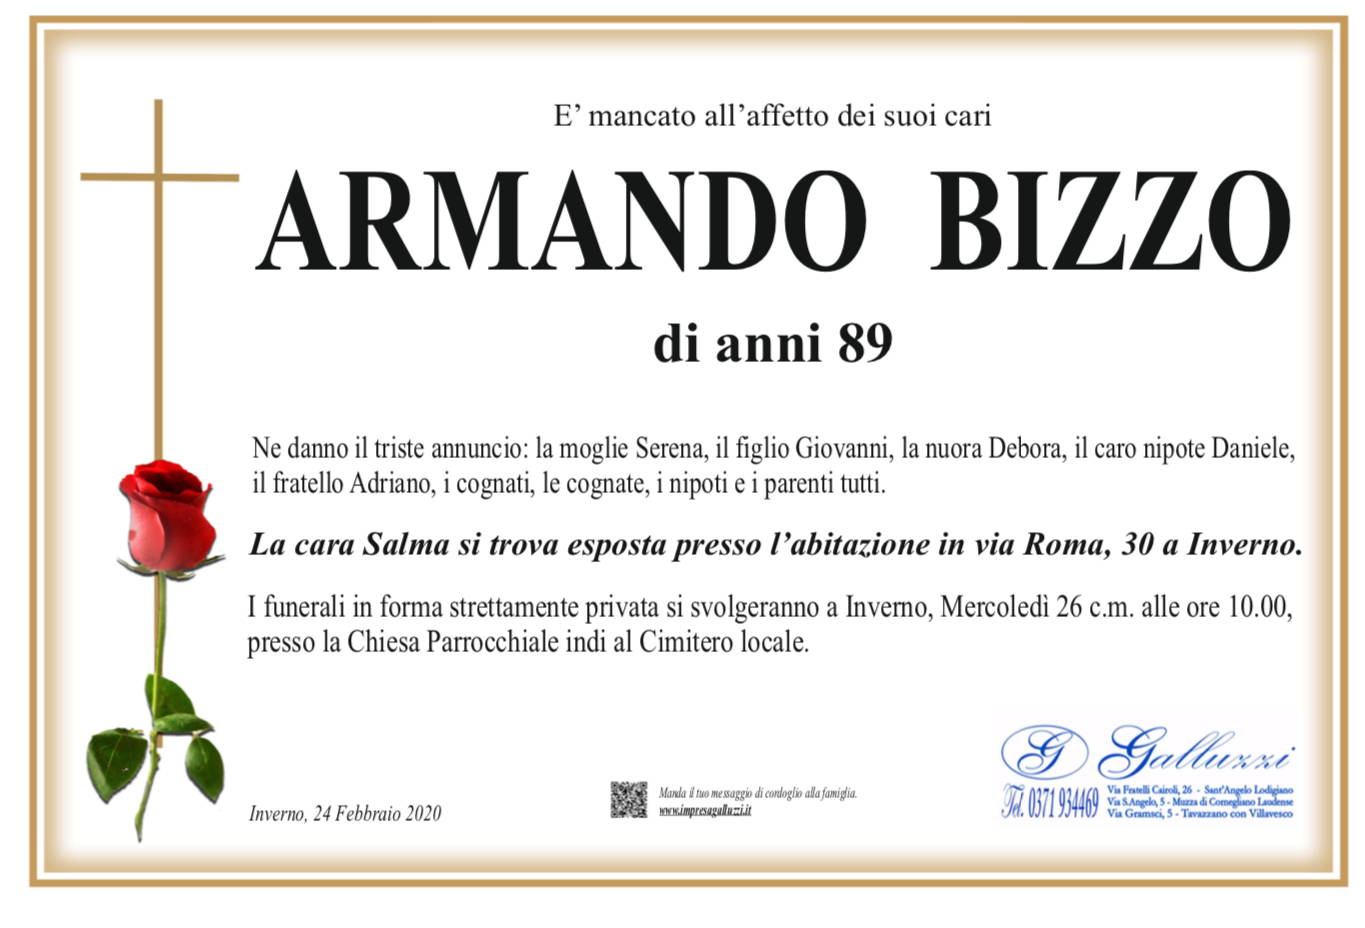 Armando Bizzo